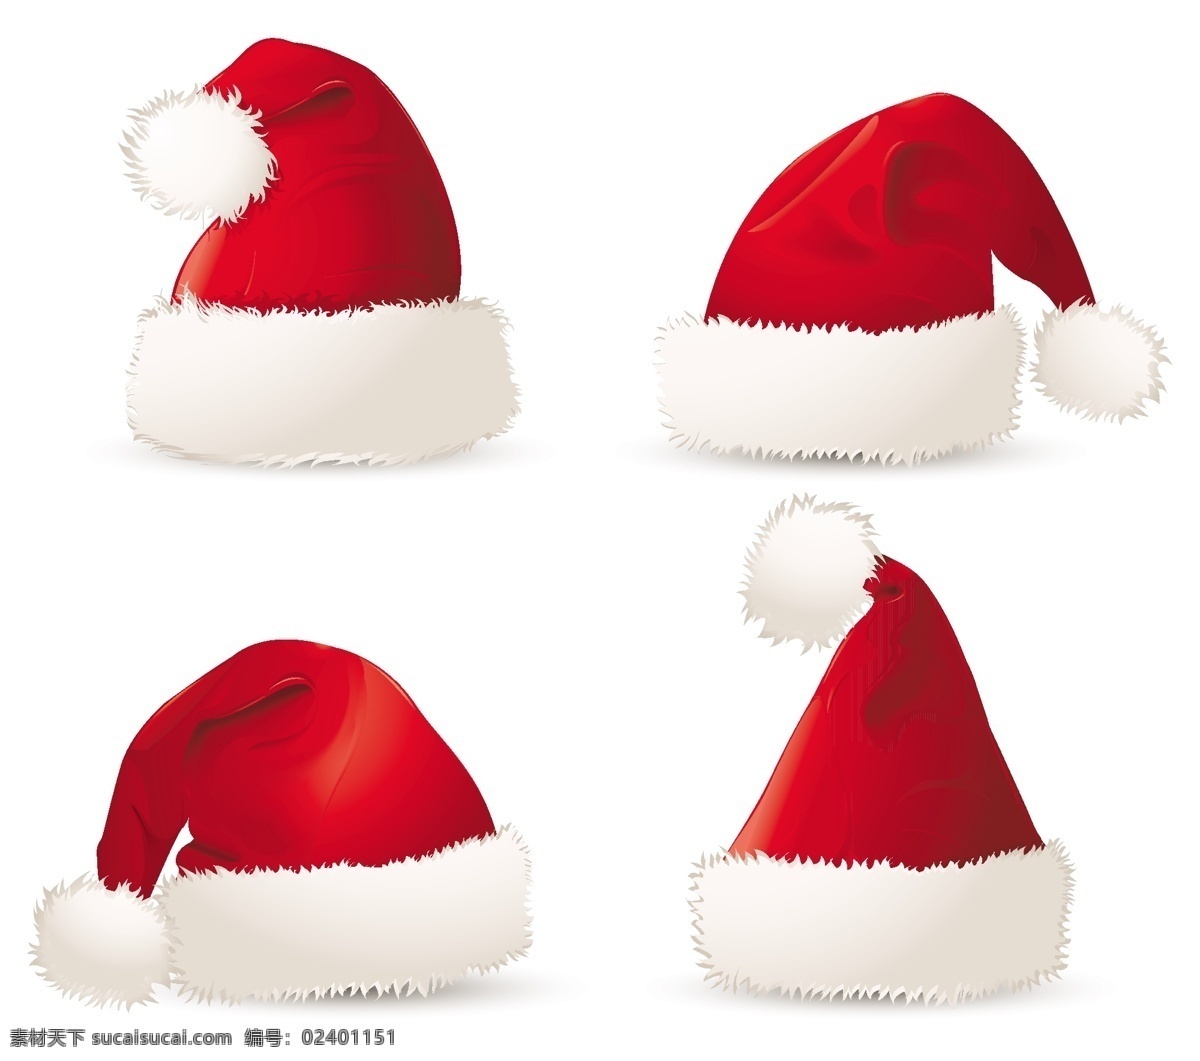 现实 圣 塔克 劳斯 矢量 帽 套 web 创意 高分辨率 接口 帽子 免费 圣诞老人 病 媒 生物 时尚 独特的 原始的 高质量 图形 质量 新鲜的 设计新的 ui元素 hd 元素 详细的 红色的 载体 矢量图